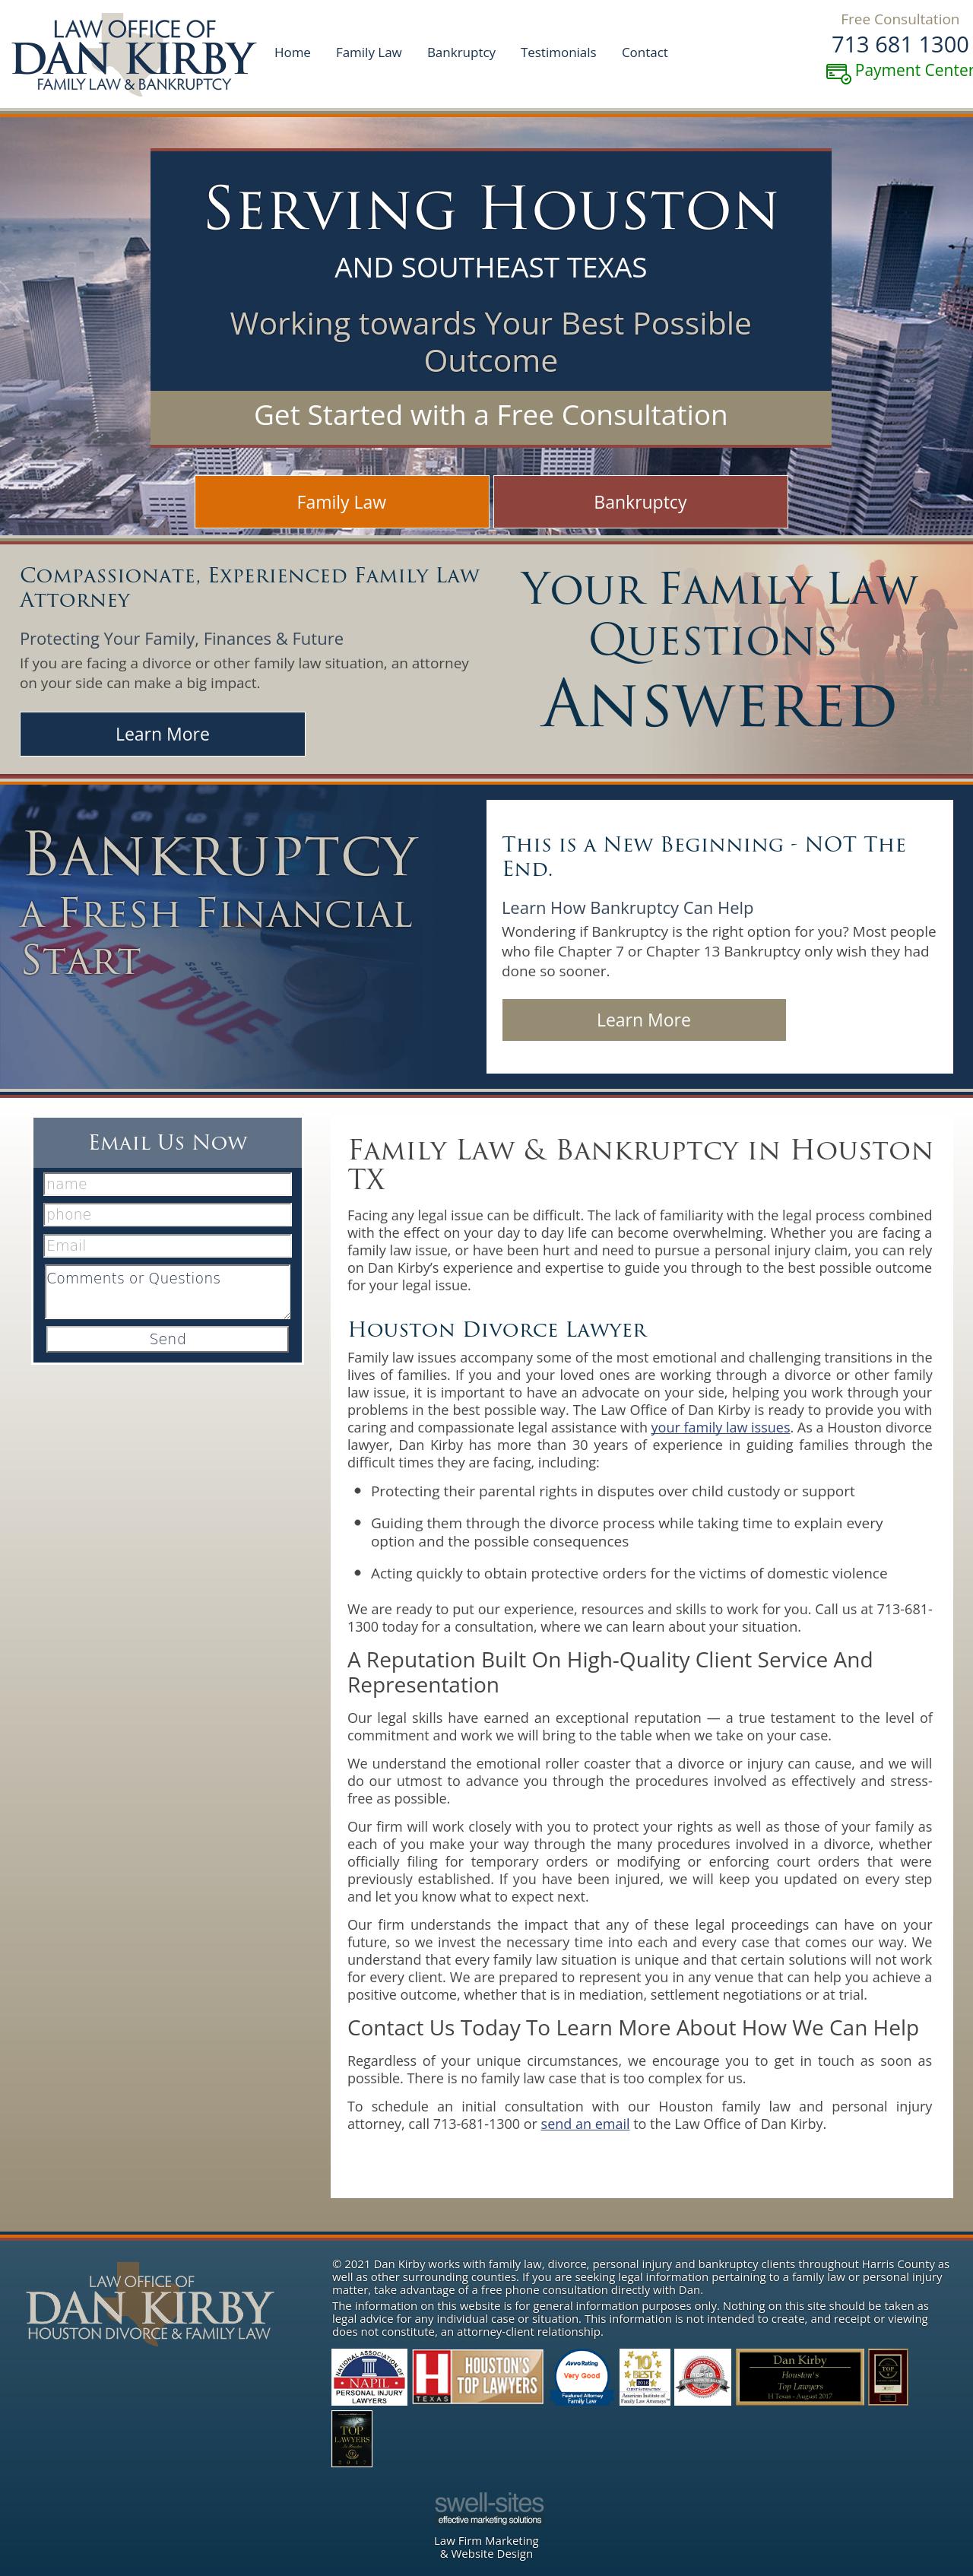 Law Office of Dan Kirby - Houston TX Lawyers